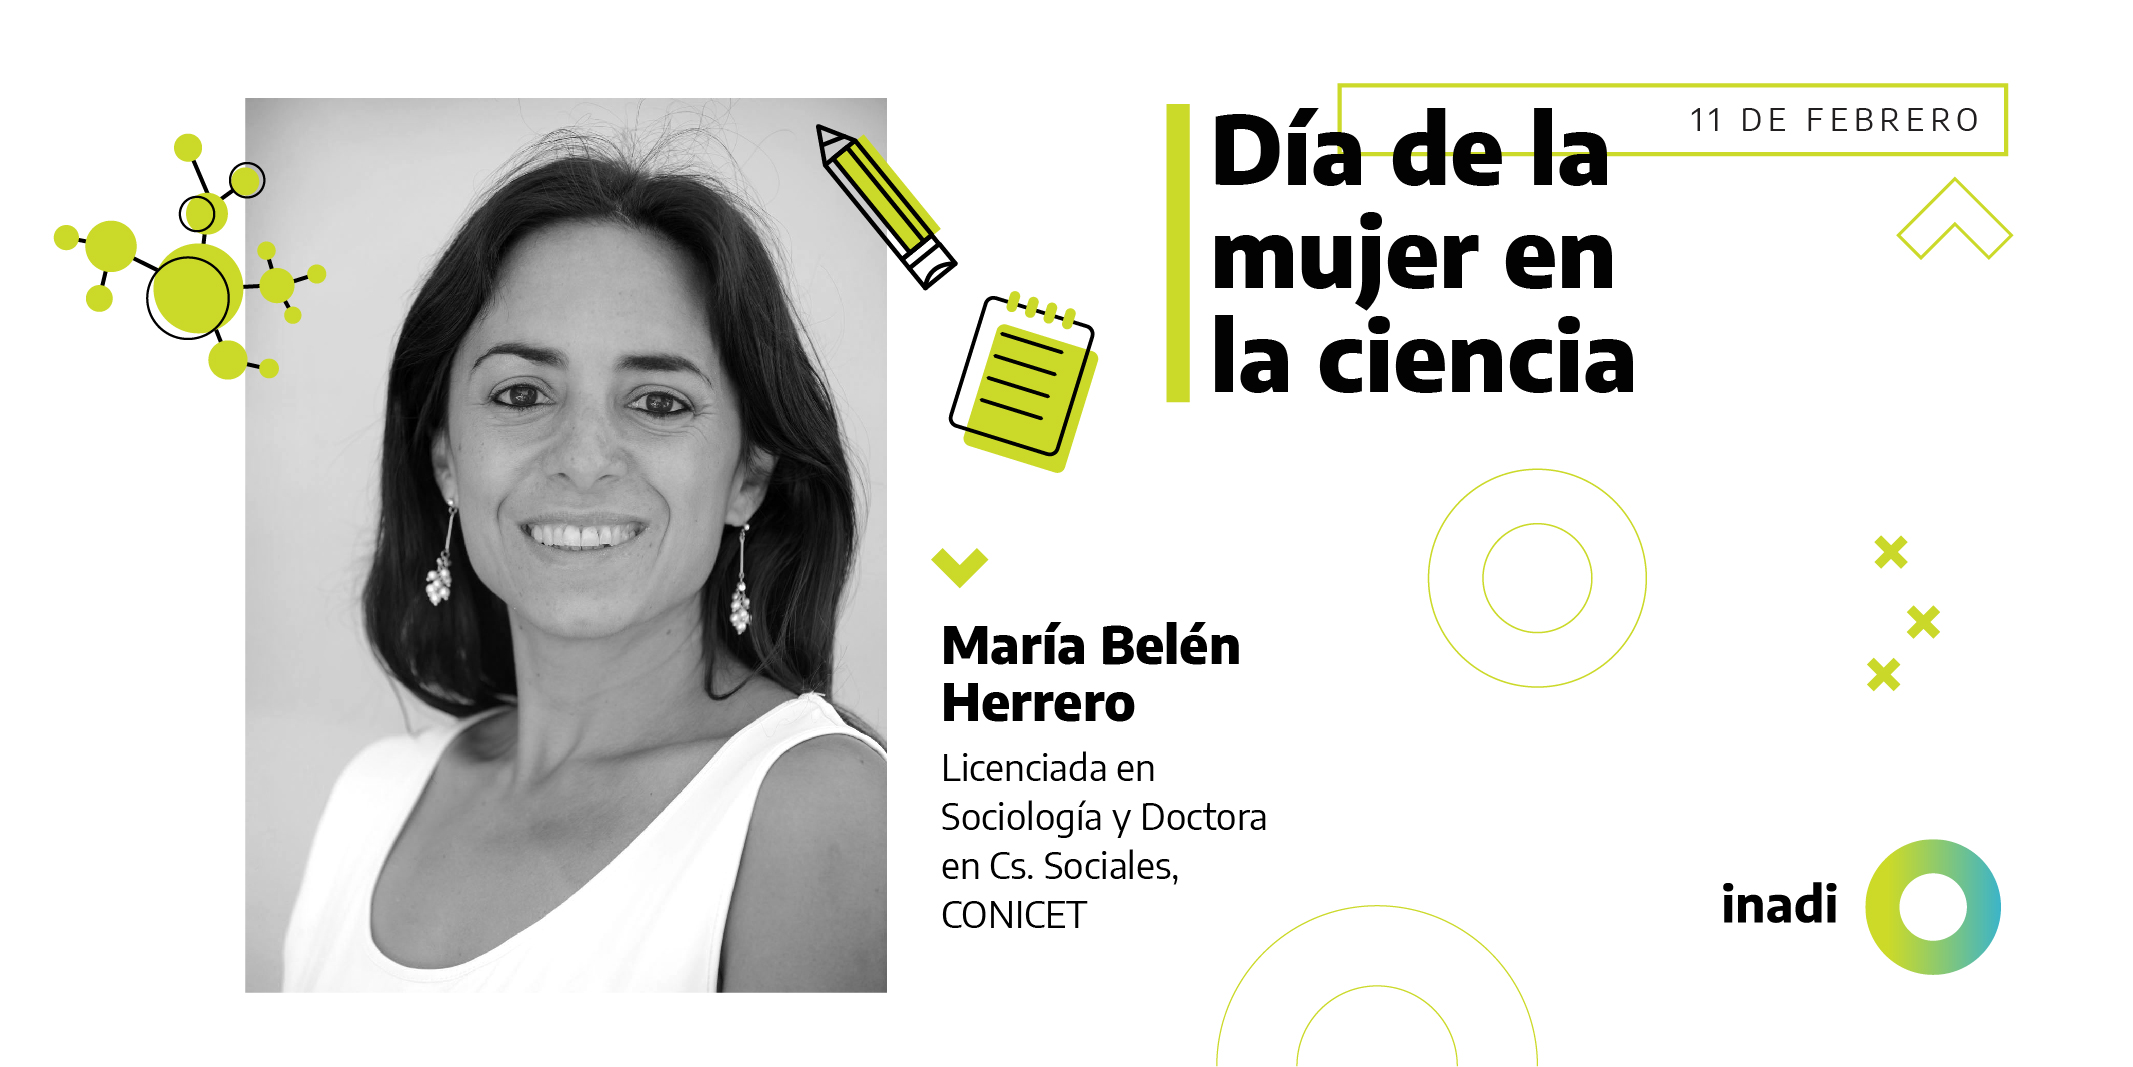 María Belén Herrero